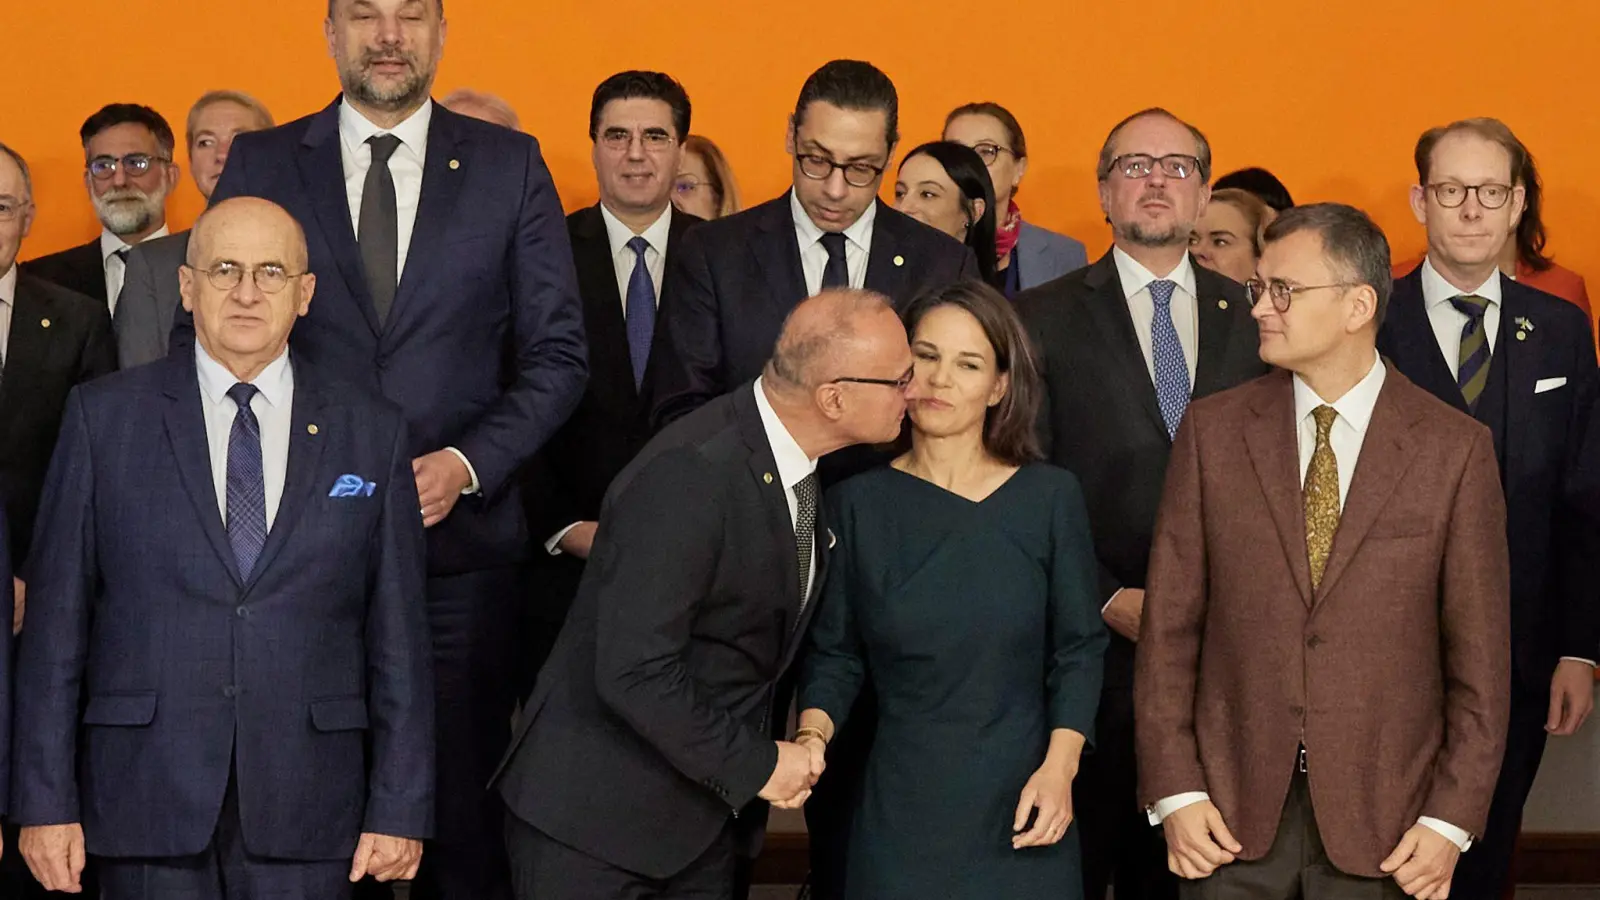 Der kroatische Außenminister Gordan Grlić Radman begrüßt Annalena Baerbock mit einen Kuss beim Gruppenbild im Rahmen der Europakonferenz in Berlin. (Foto: Joerg Carstensen/dpa)